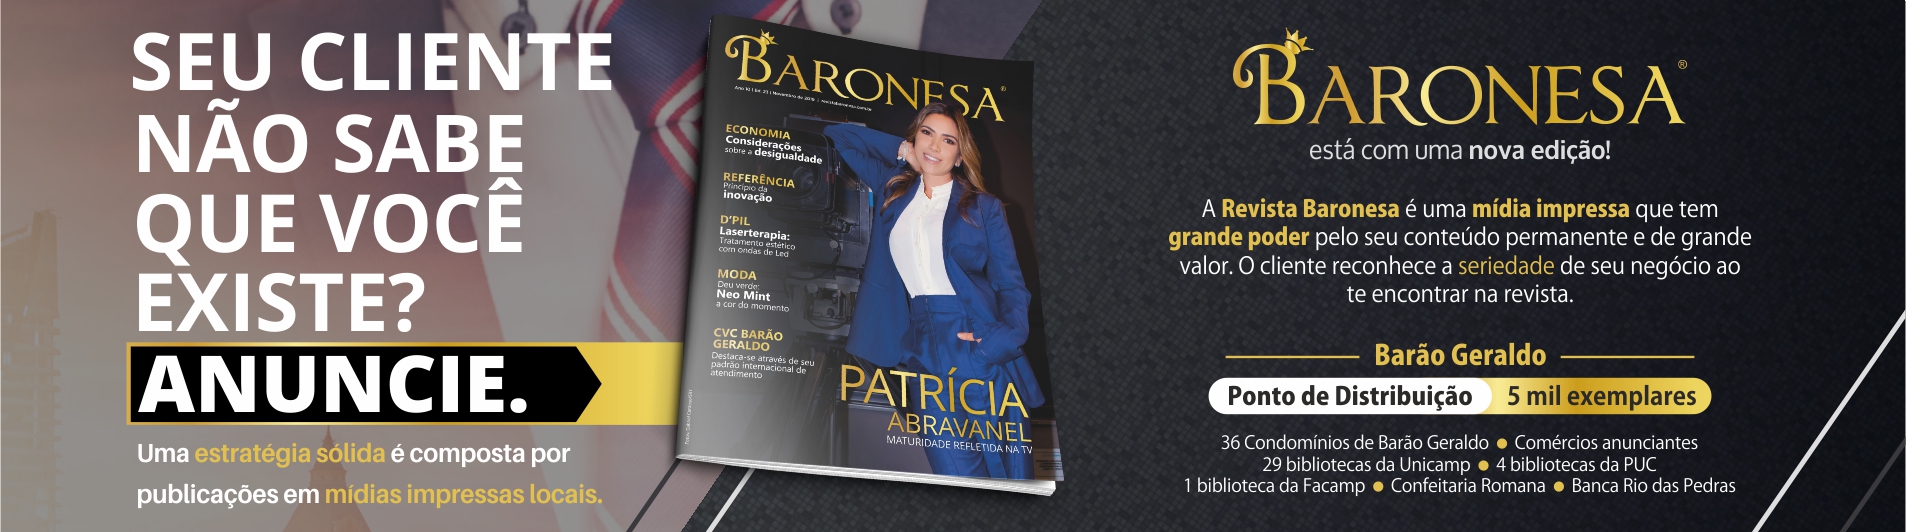 Revista Baronesa - Novembro de 2019